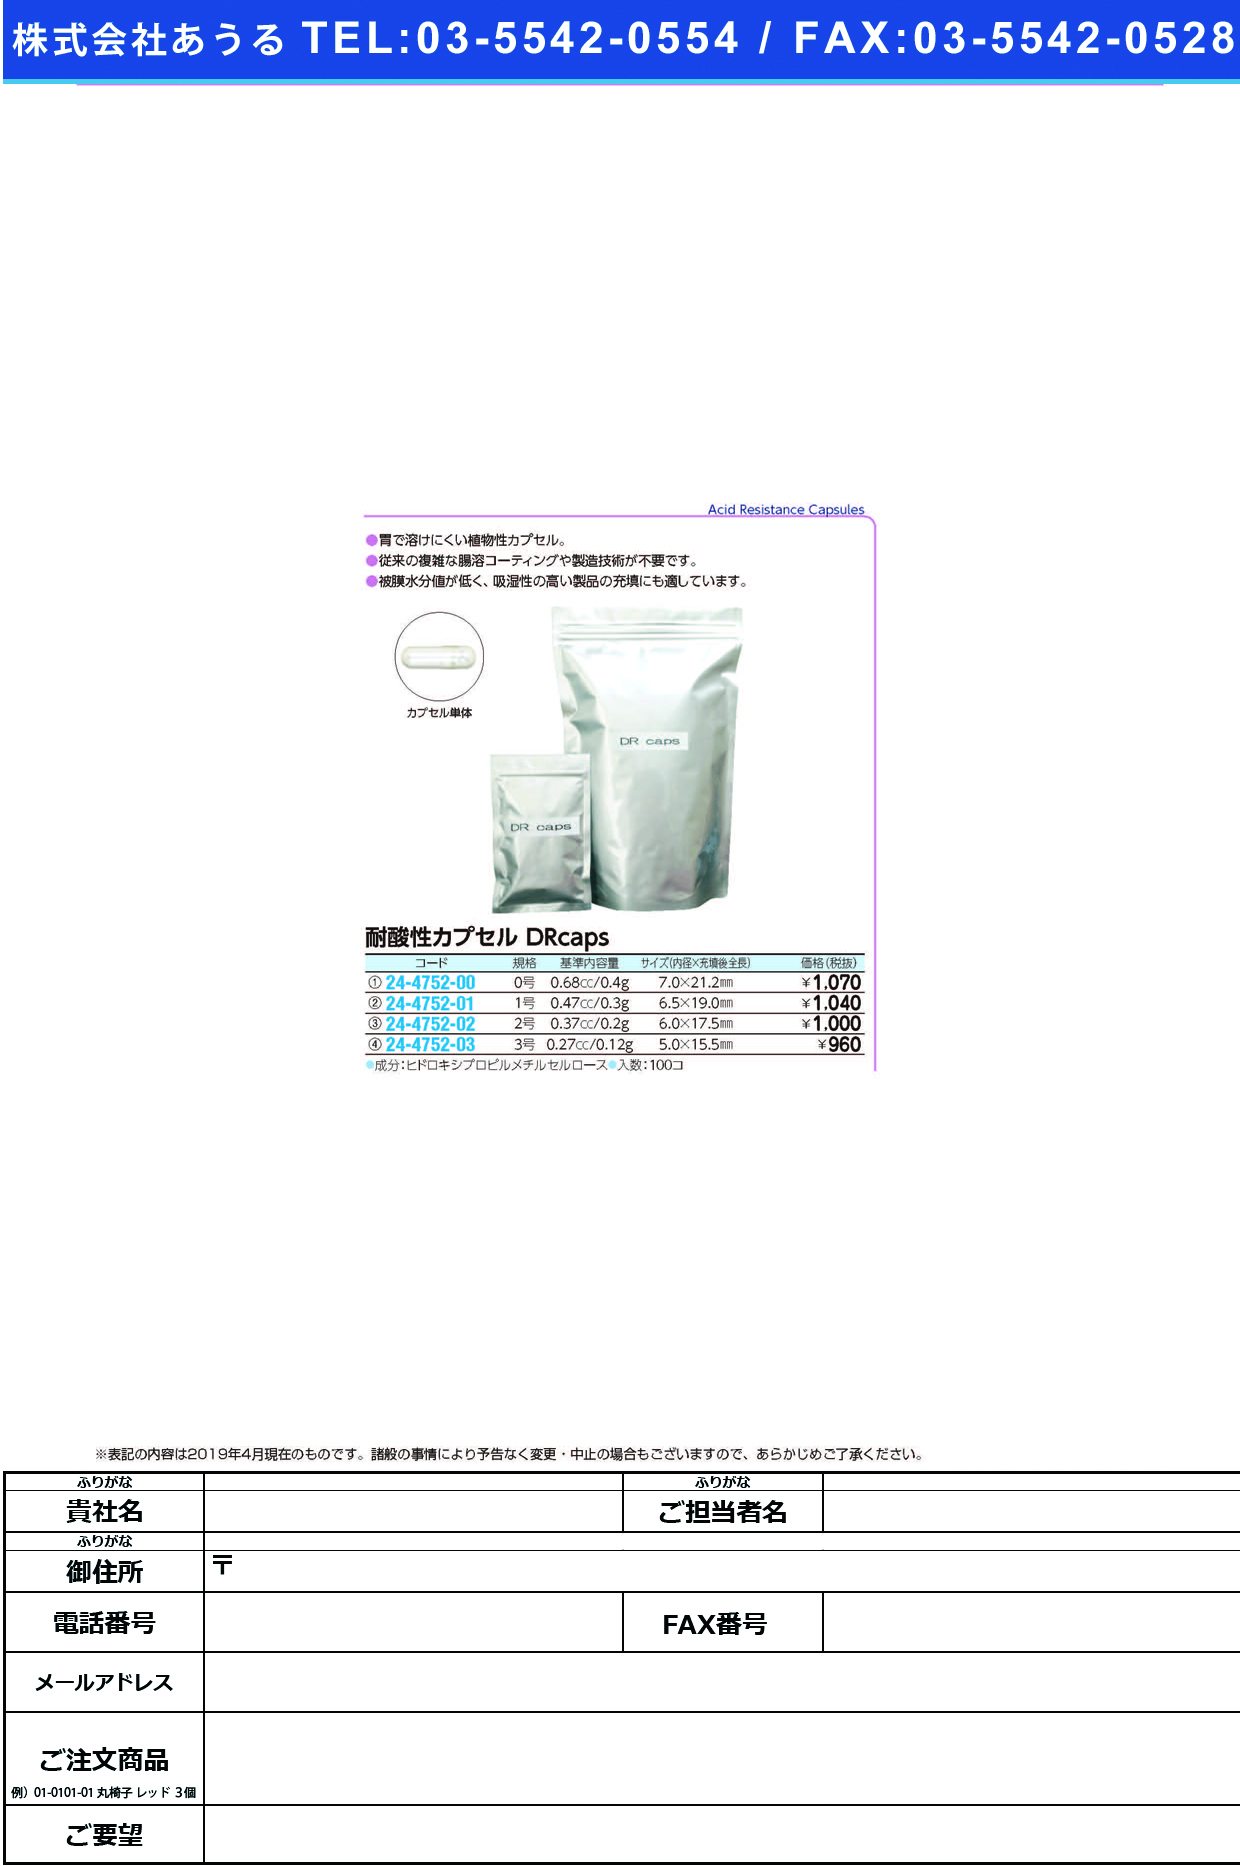 (24-4752-03)耐酸性カプセルＤＲｃａｐｓ #3(ﾄｳﾒｲ)100ｺｲﾘ DRｶﾌﾟｾﾙｻｲｽﾞ3【1袋単位】【2019年カタログ商品】